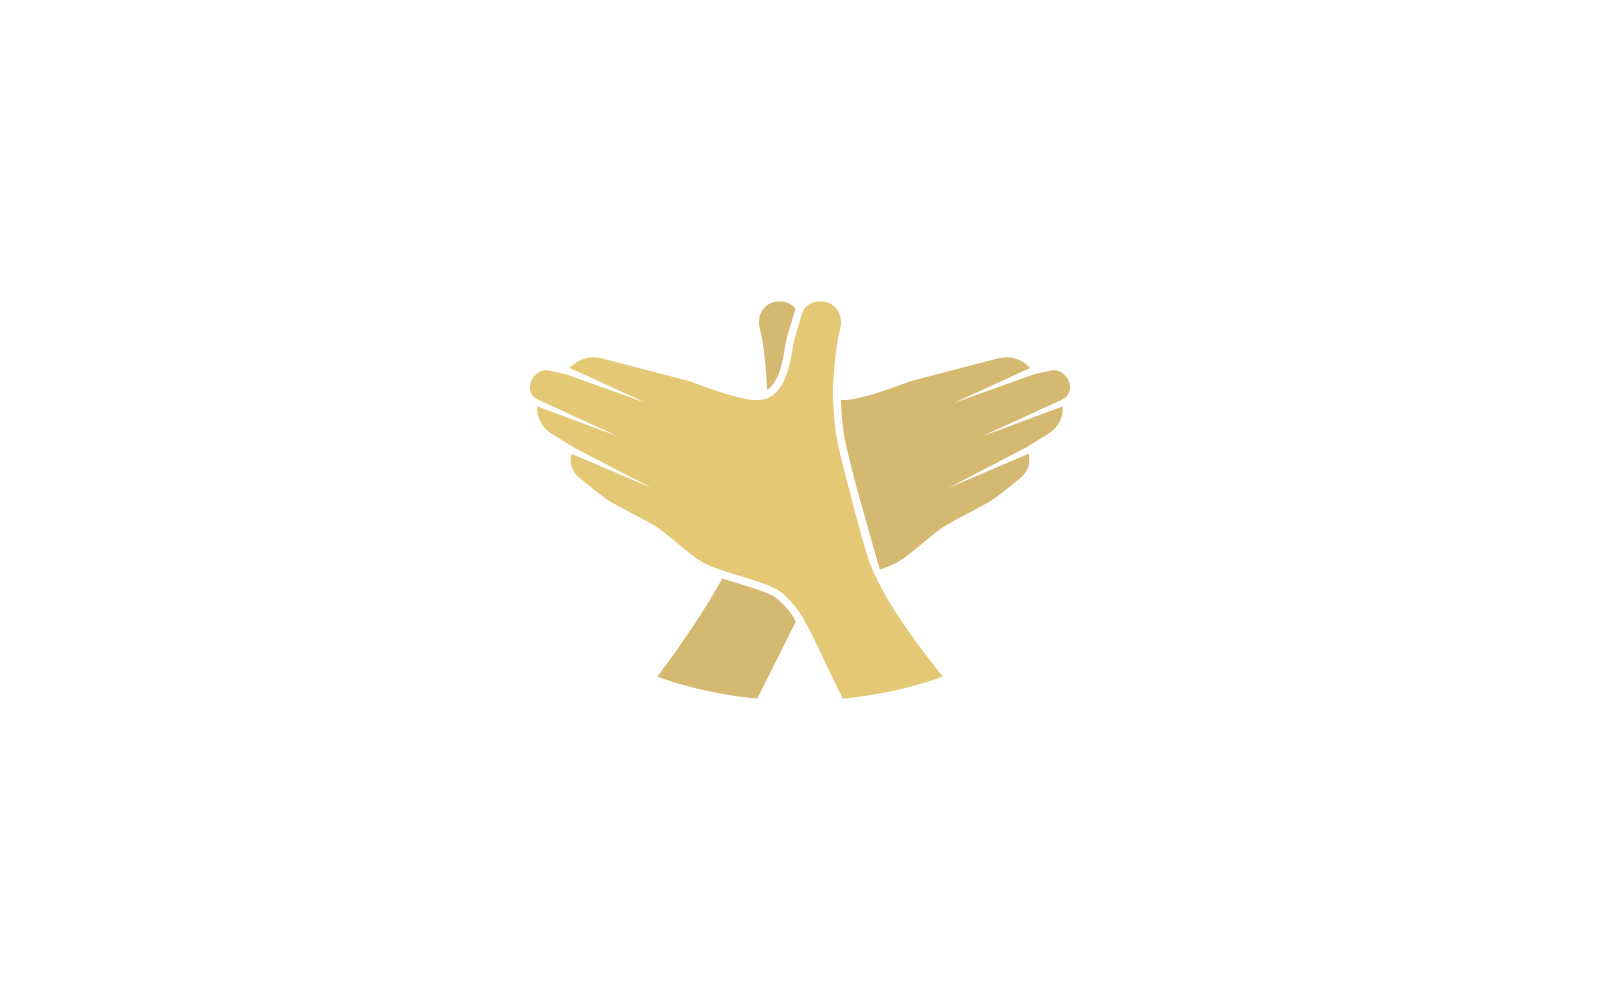 Hand gesture bird illustration logo design